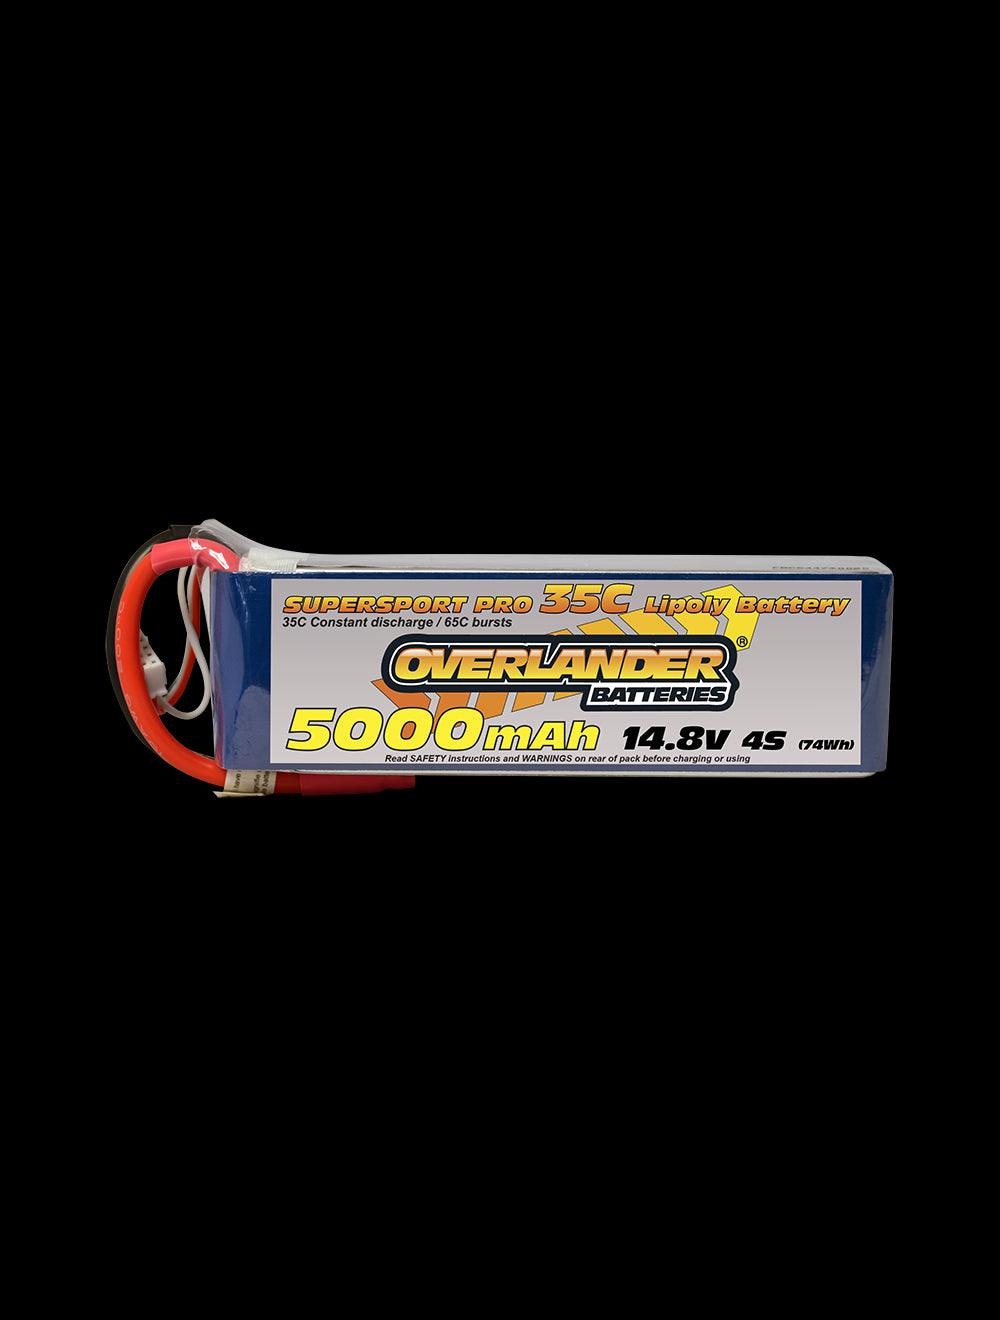 Overlander 5000mAh 14.8V 4S 35C Supersport Pro LiPo Battery - XT90 Connector 2578